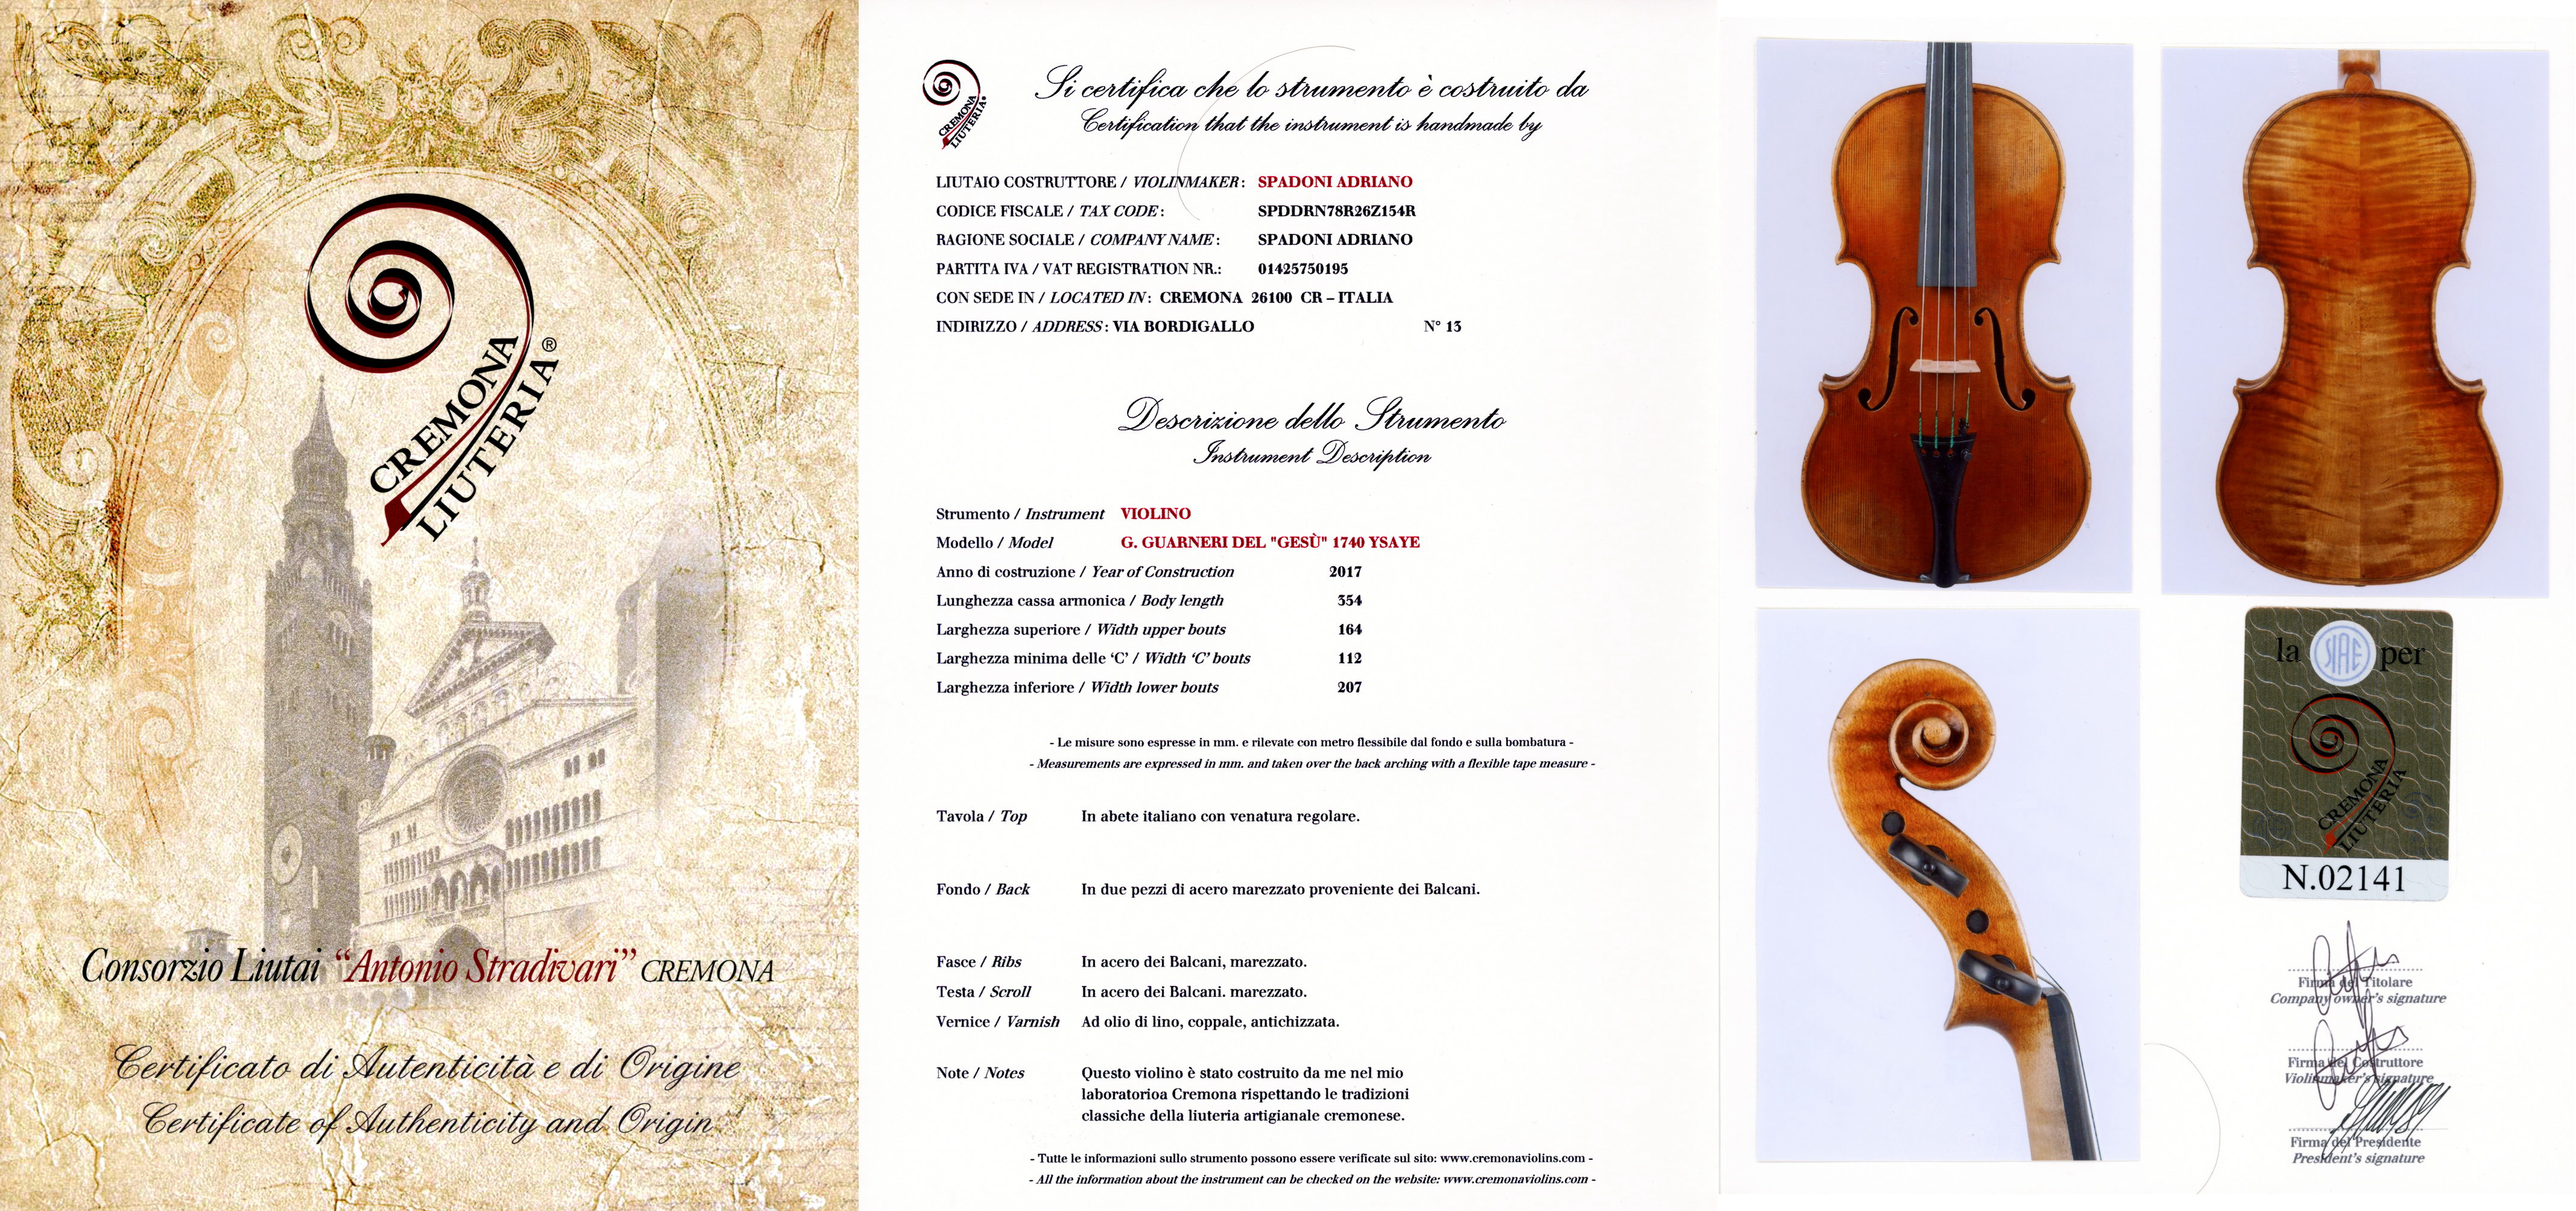 クレモナ弦楽器製作者協会発行の証明書